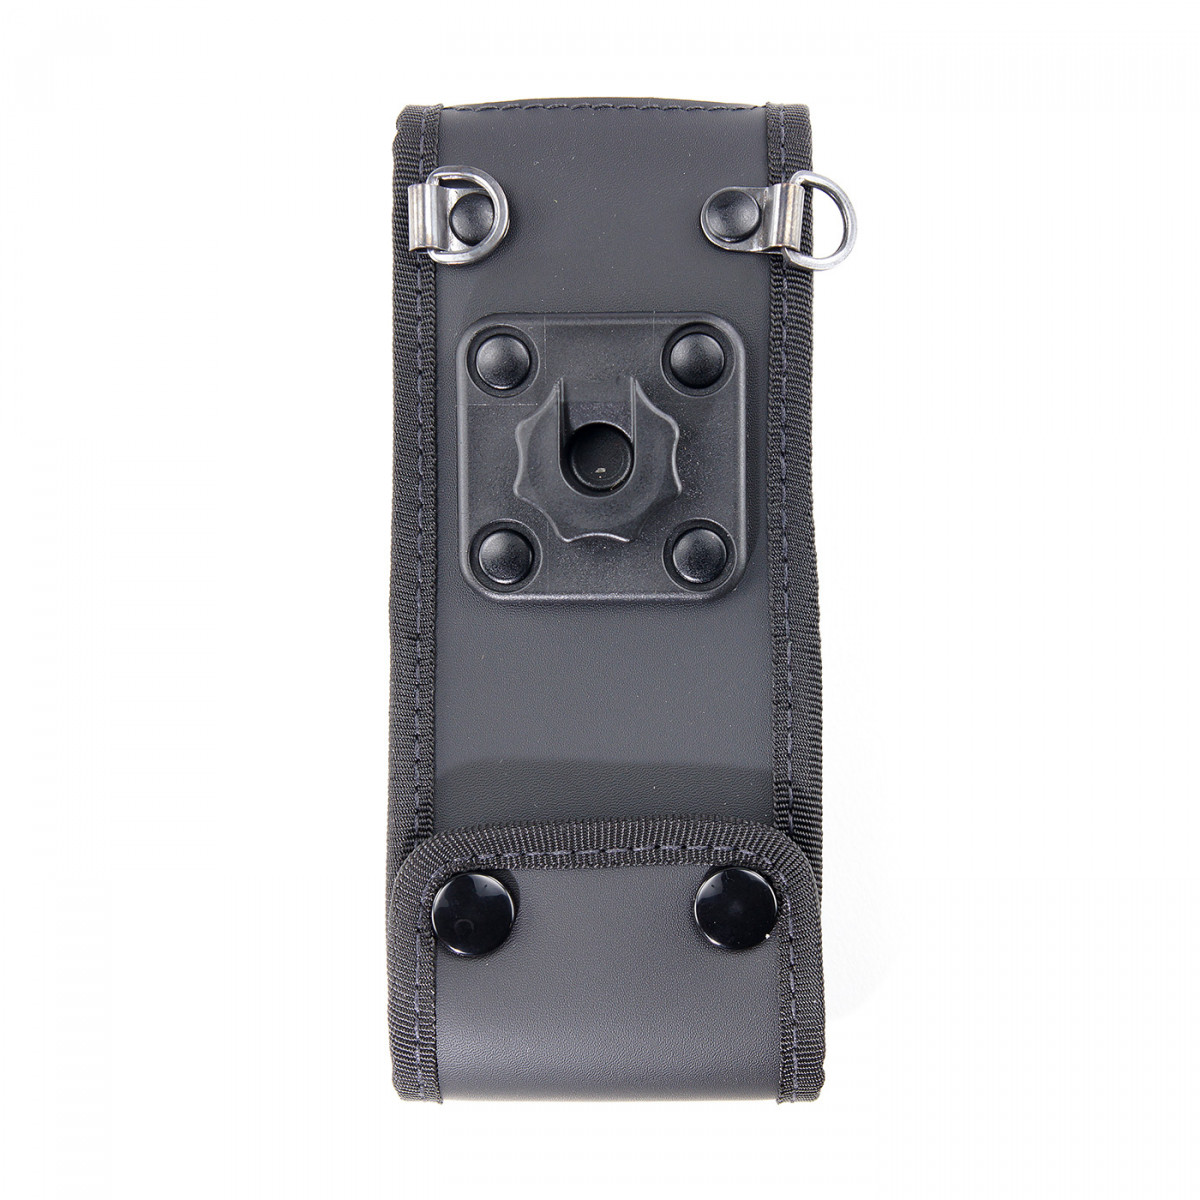 SEPURA Weichledertasche mit kontakt-pro Knopf für Sepura STP8038 STP9038 E16902 M27054